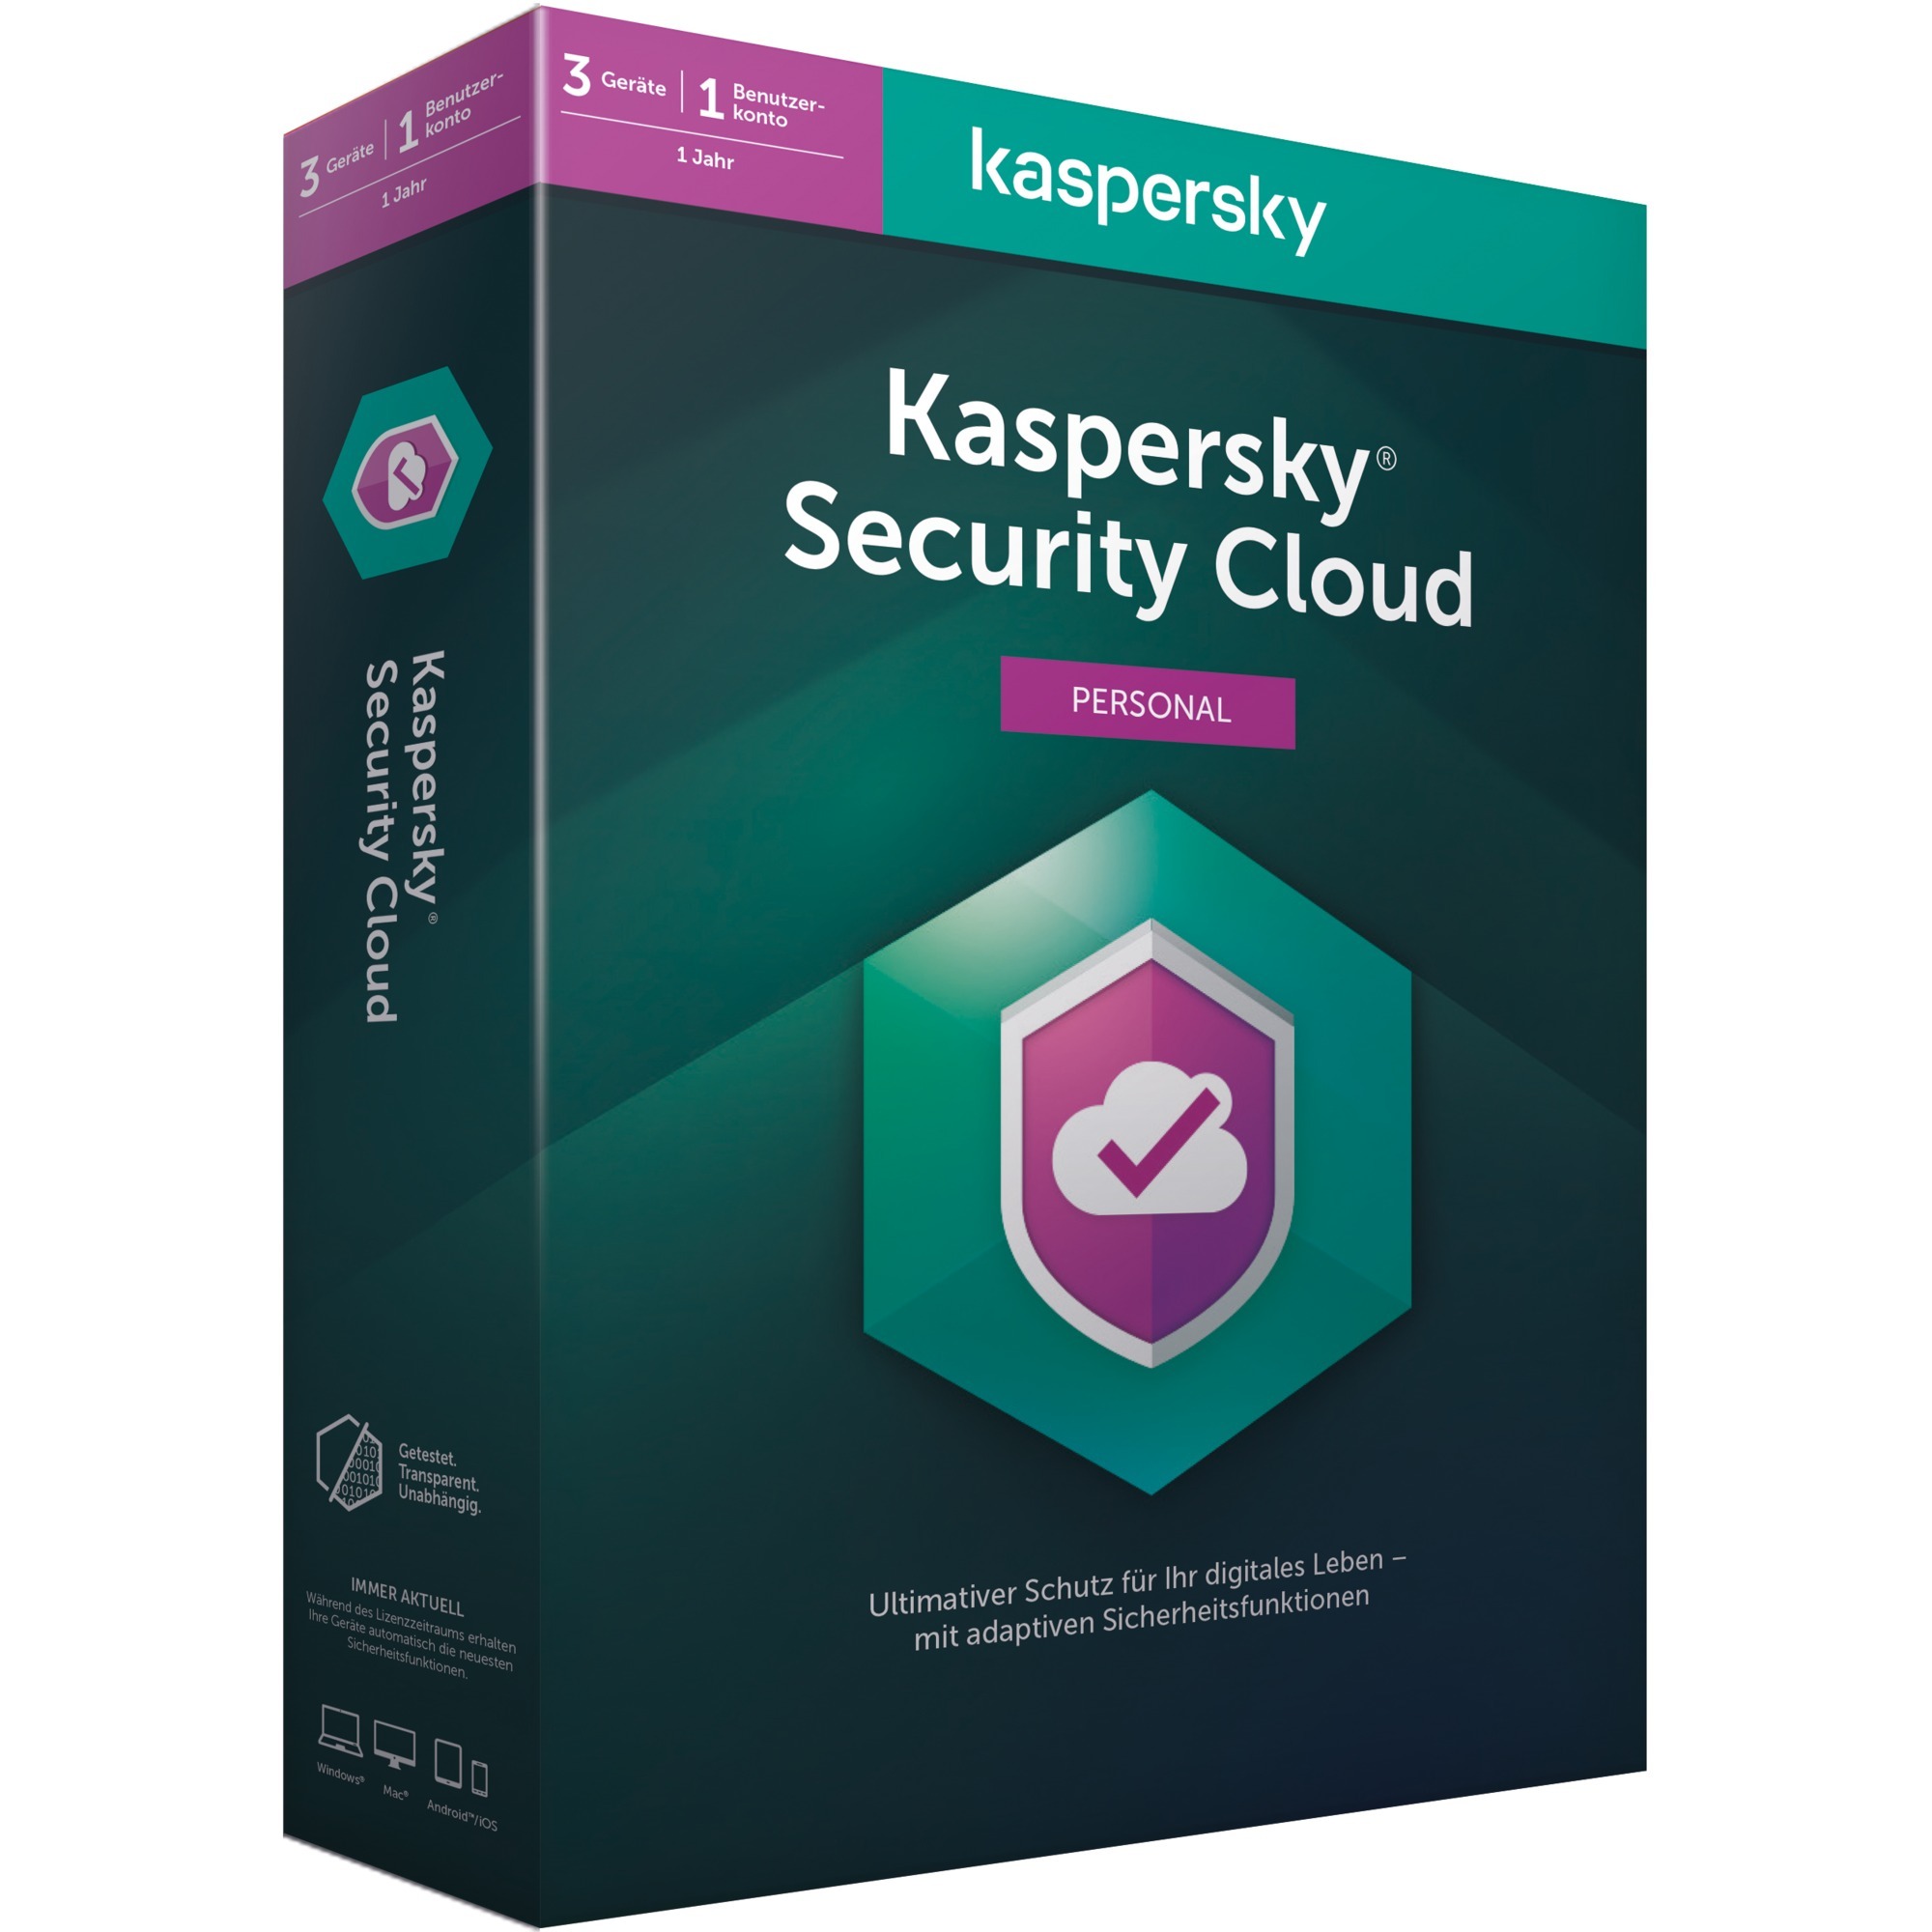 Kaspersky Security Cloud (Personal)